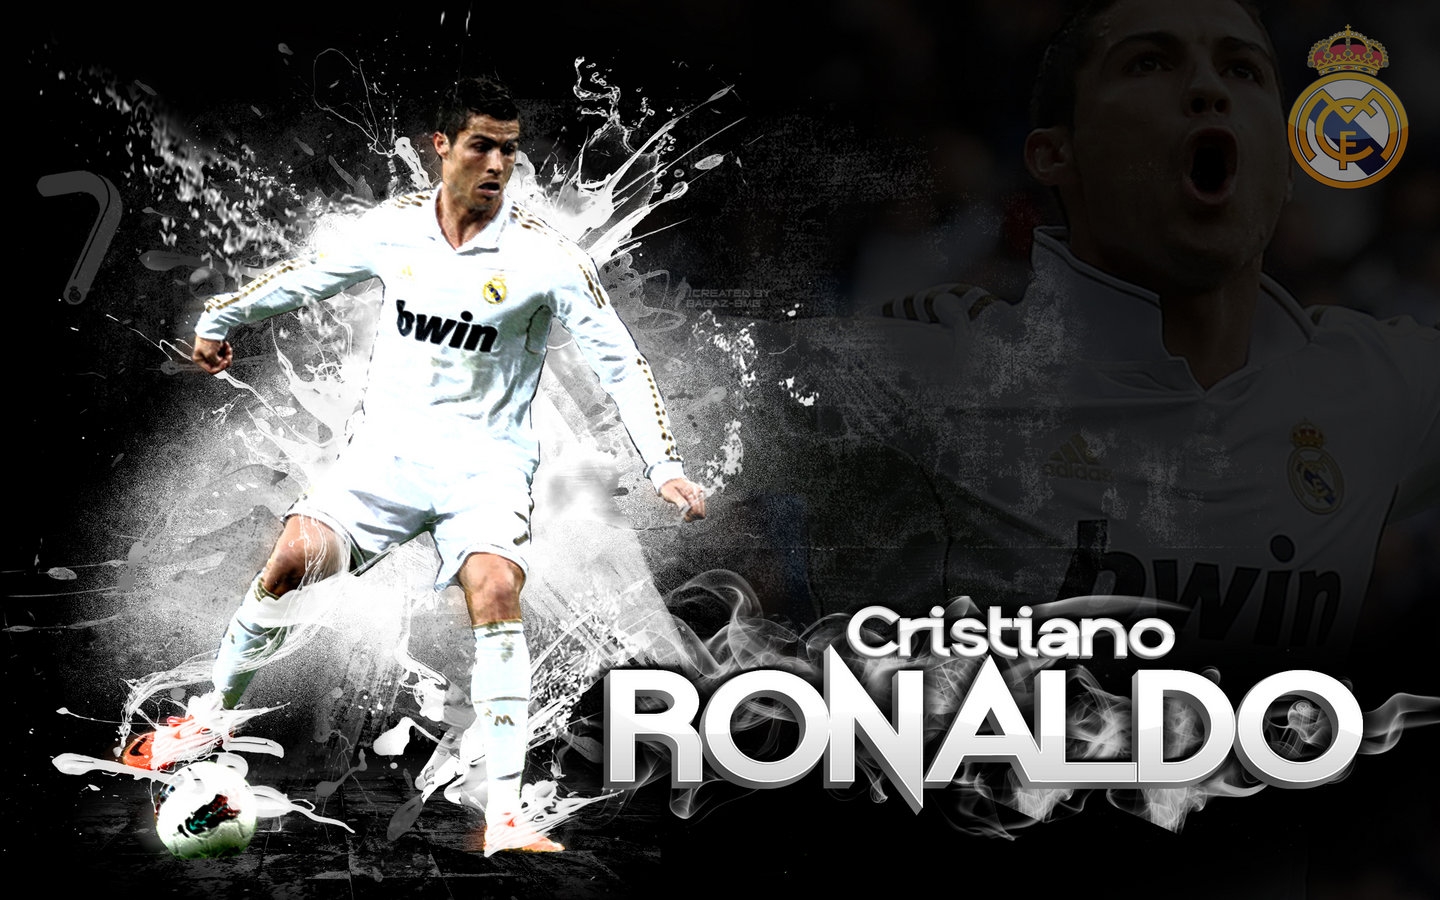 Cristiano Ronaldo Wallpaper - Cristiano Ronaldo Window 7 - HD Wallpaper 